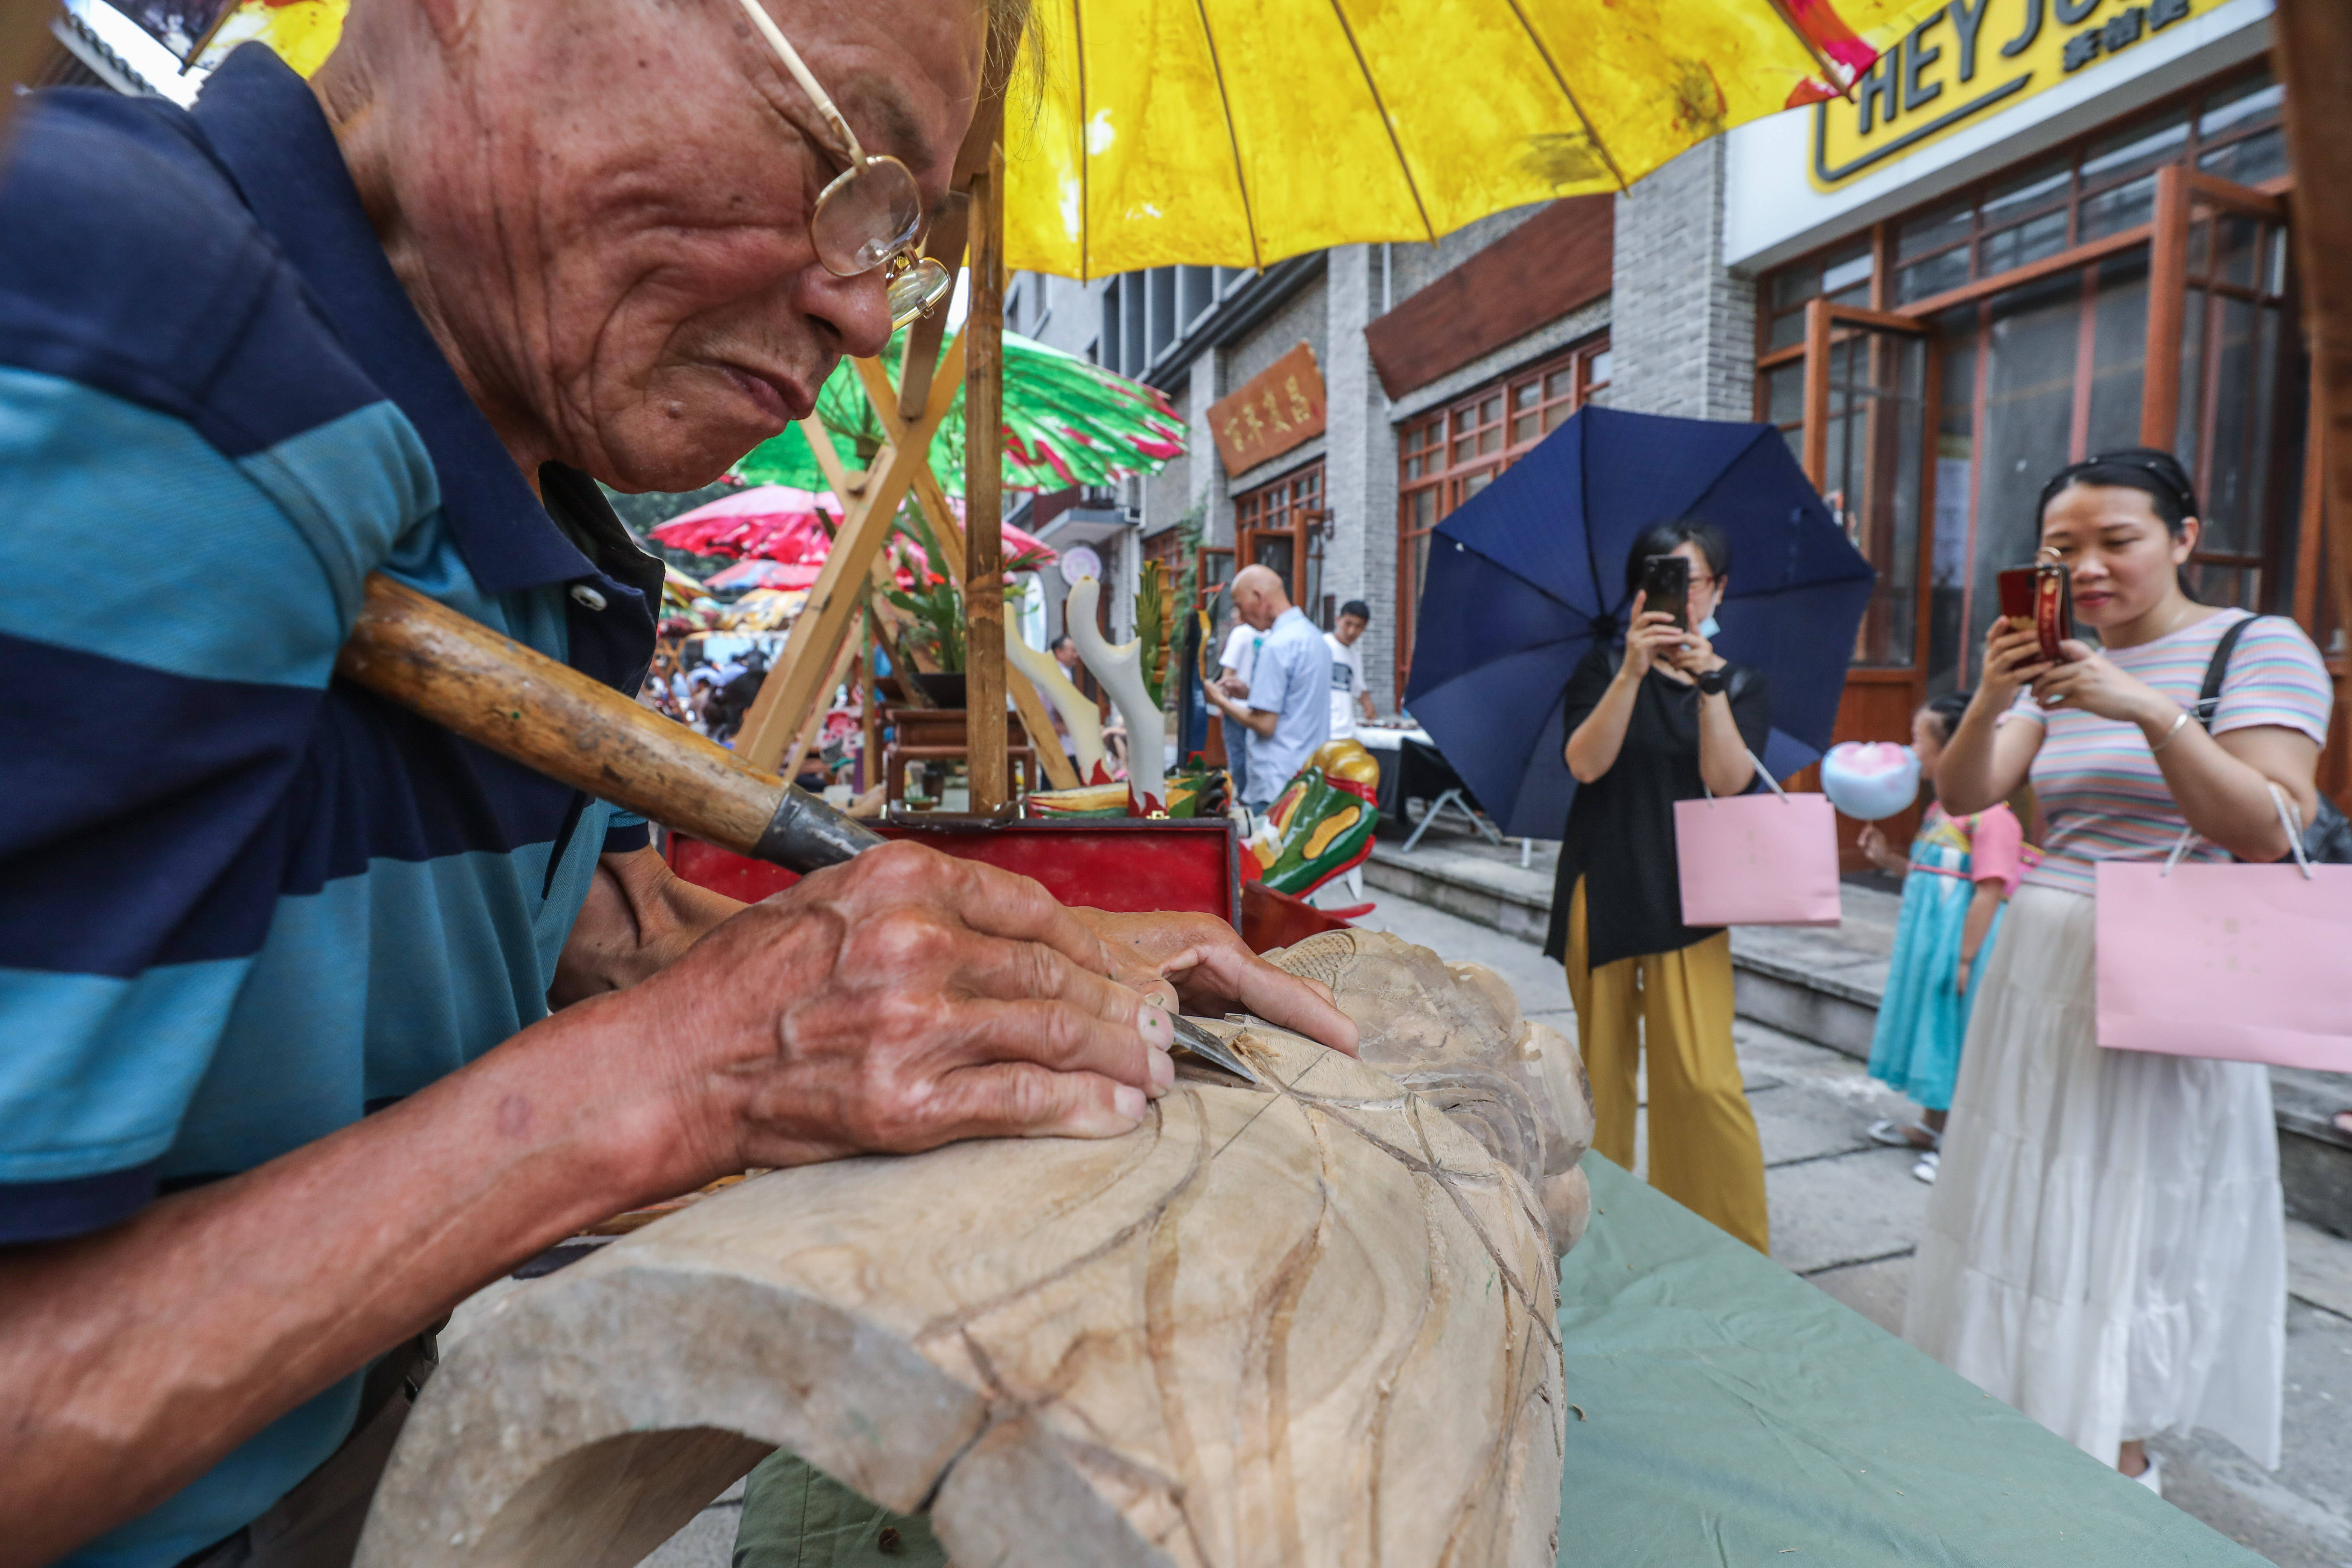 6月12日,手工艺人在瓶窑老街非遗集市上进行木刻技艺展示